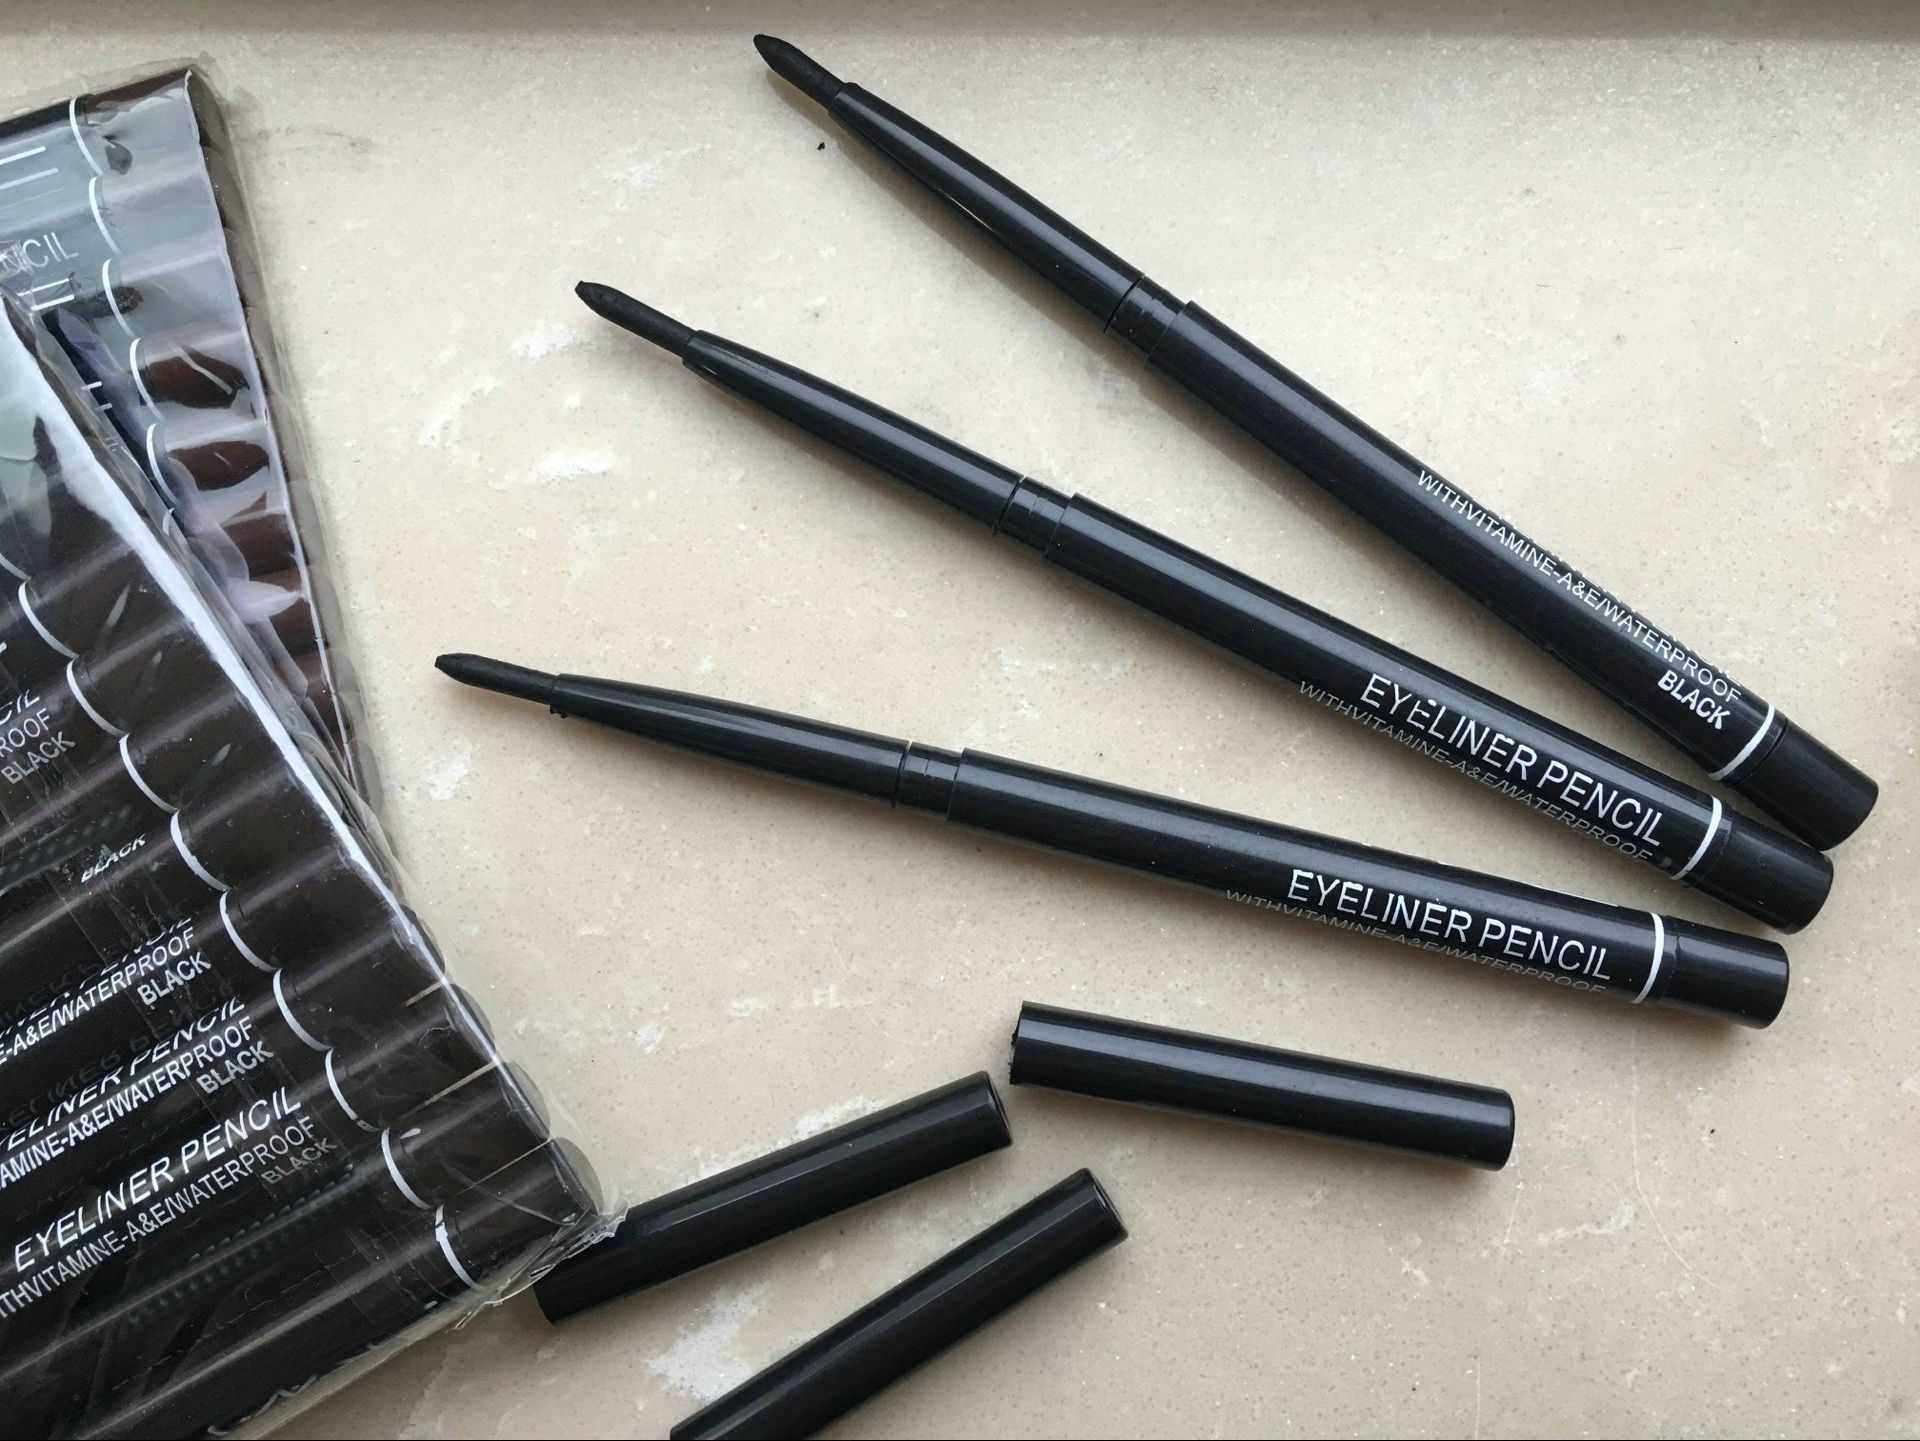 Nouveau cadeau! Nouveau maquillage EYELINER Eyeliner crayon crayon pour les yeux noir et brun